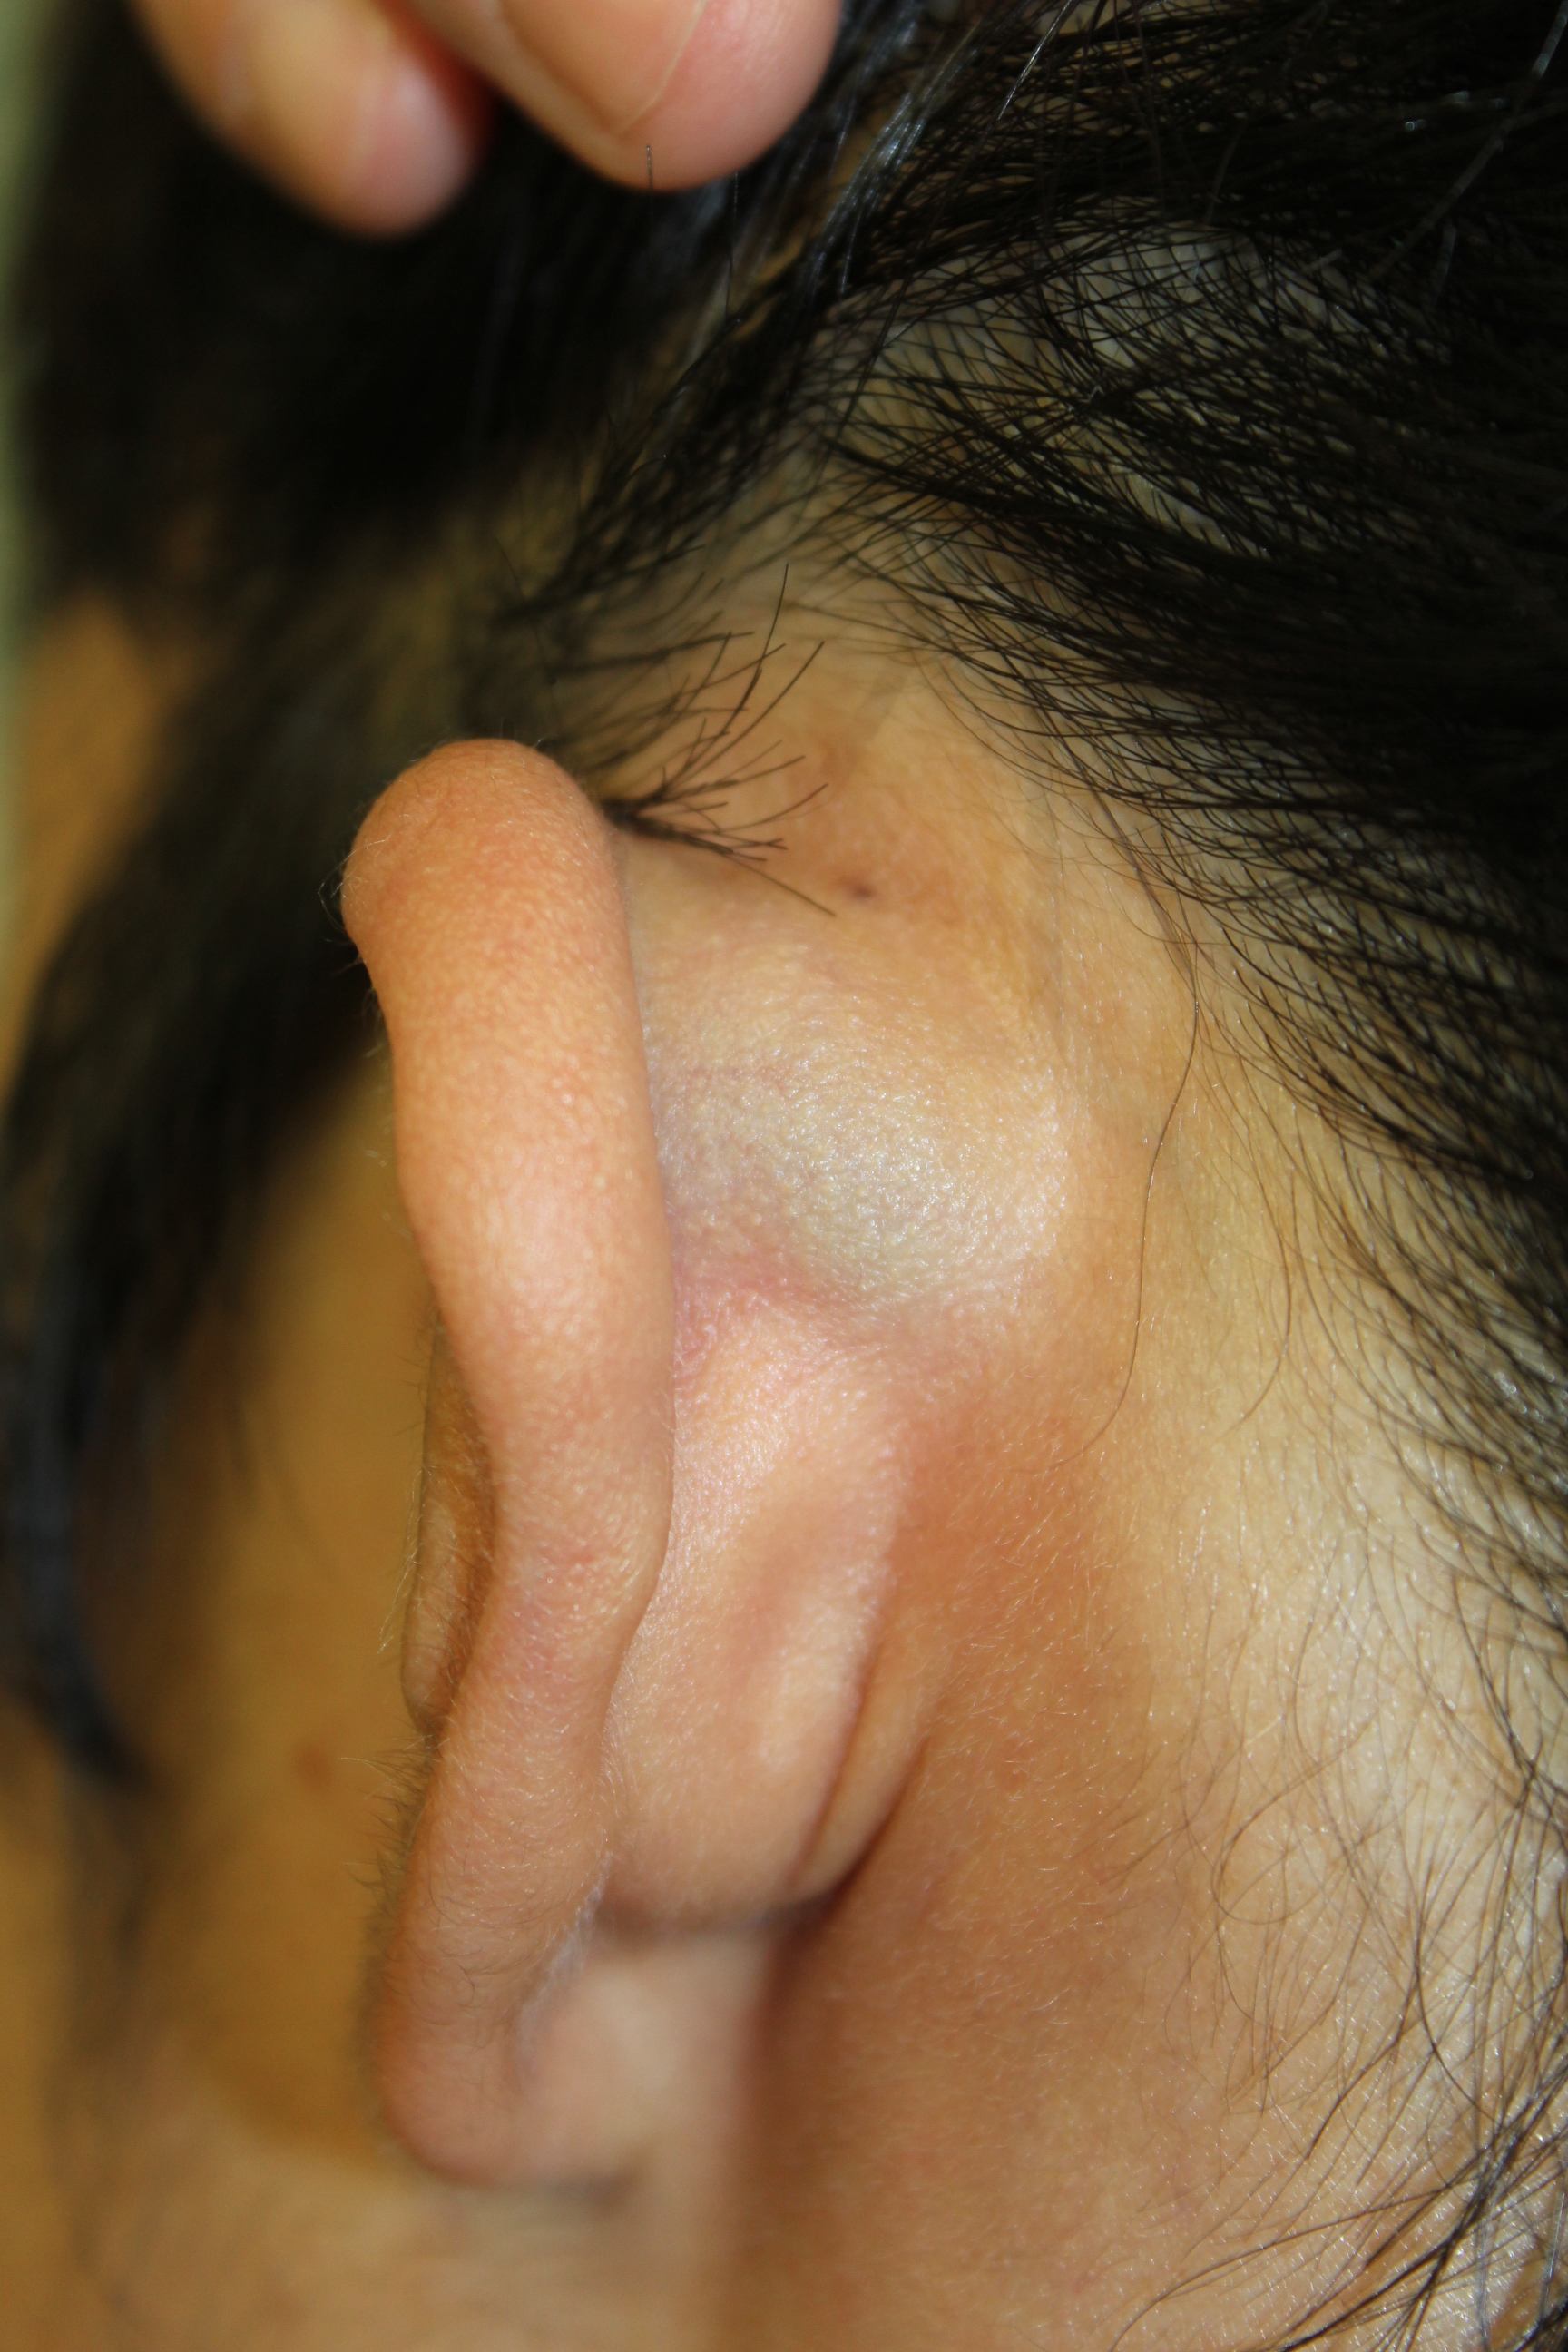 耳朵软骨炎的症状图,耳廓红肿 - 伤感说说吧